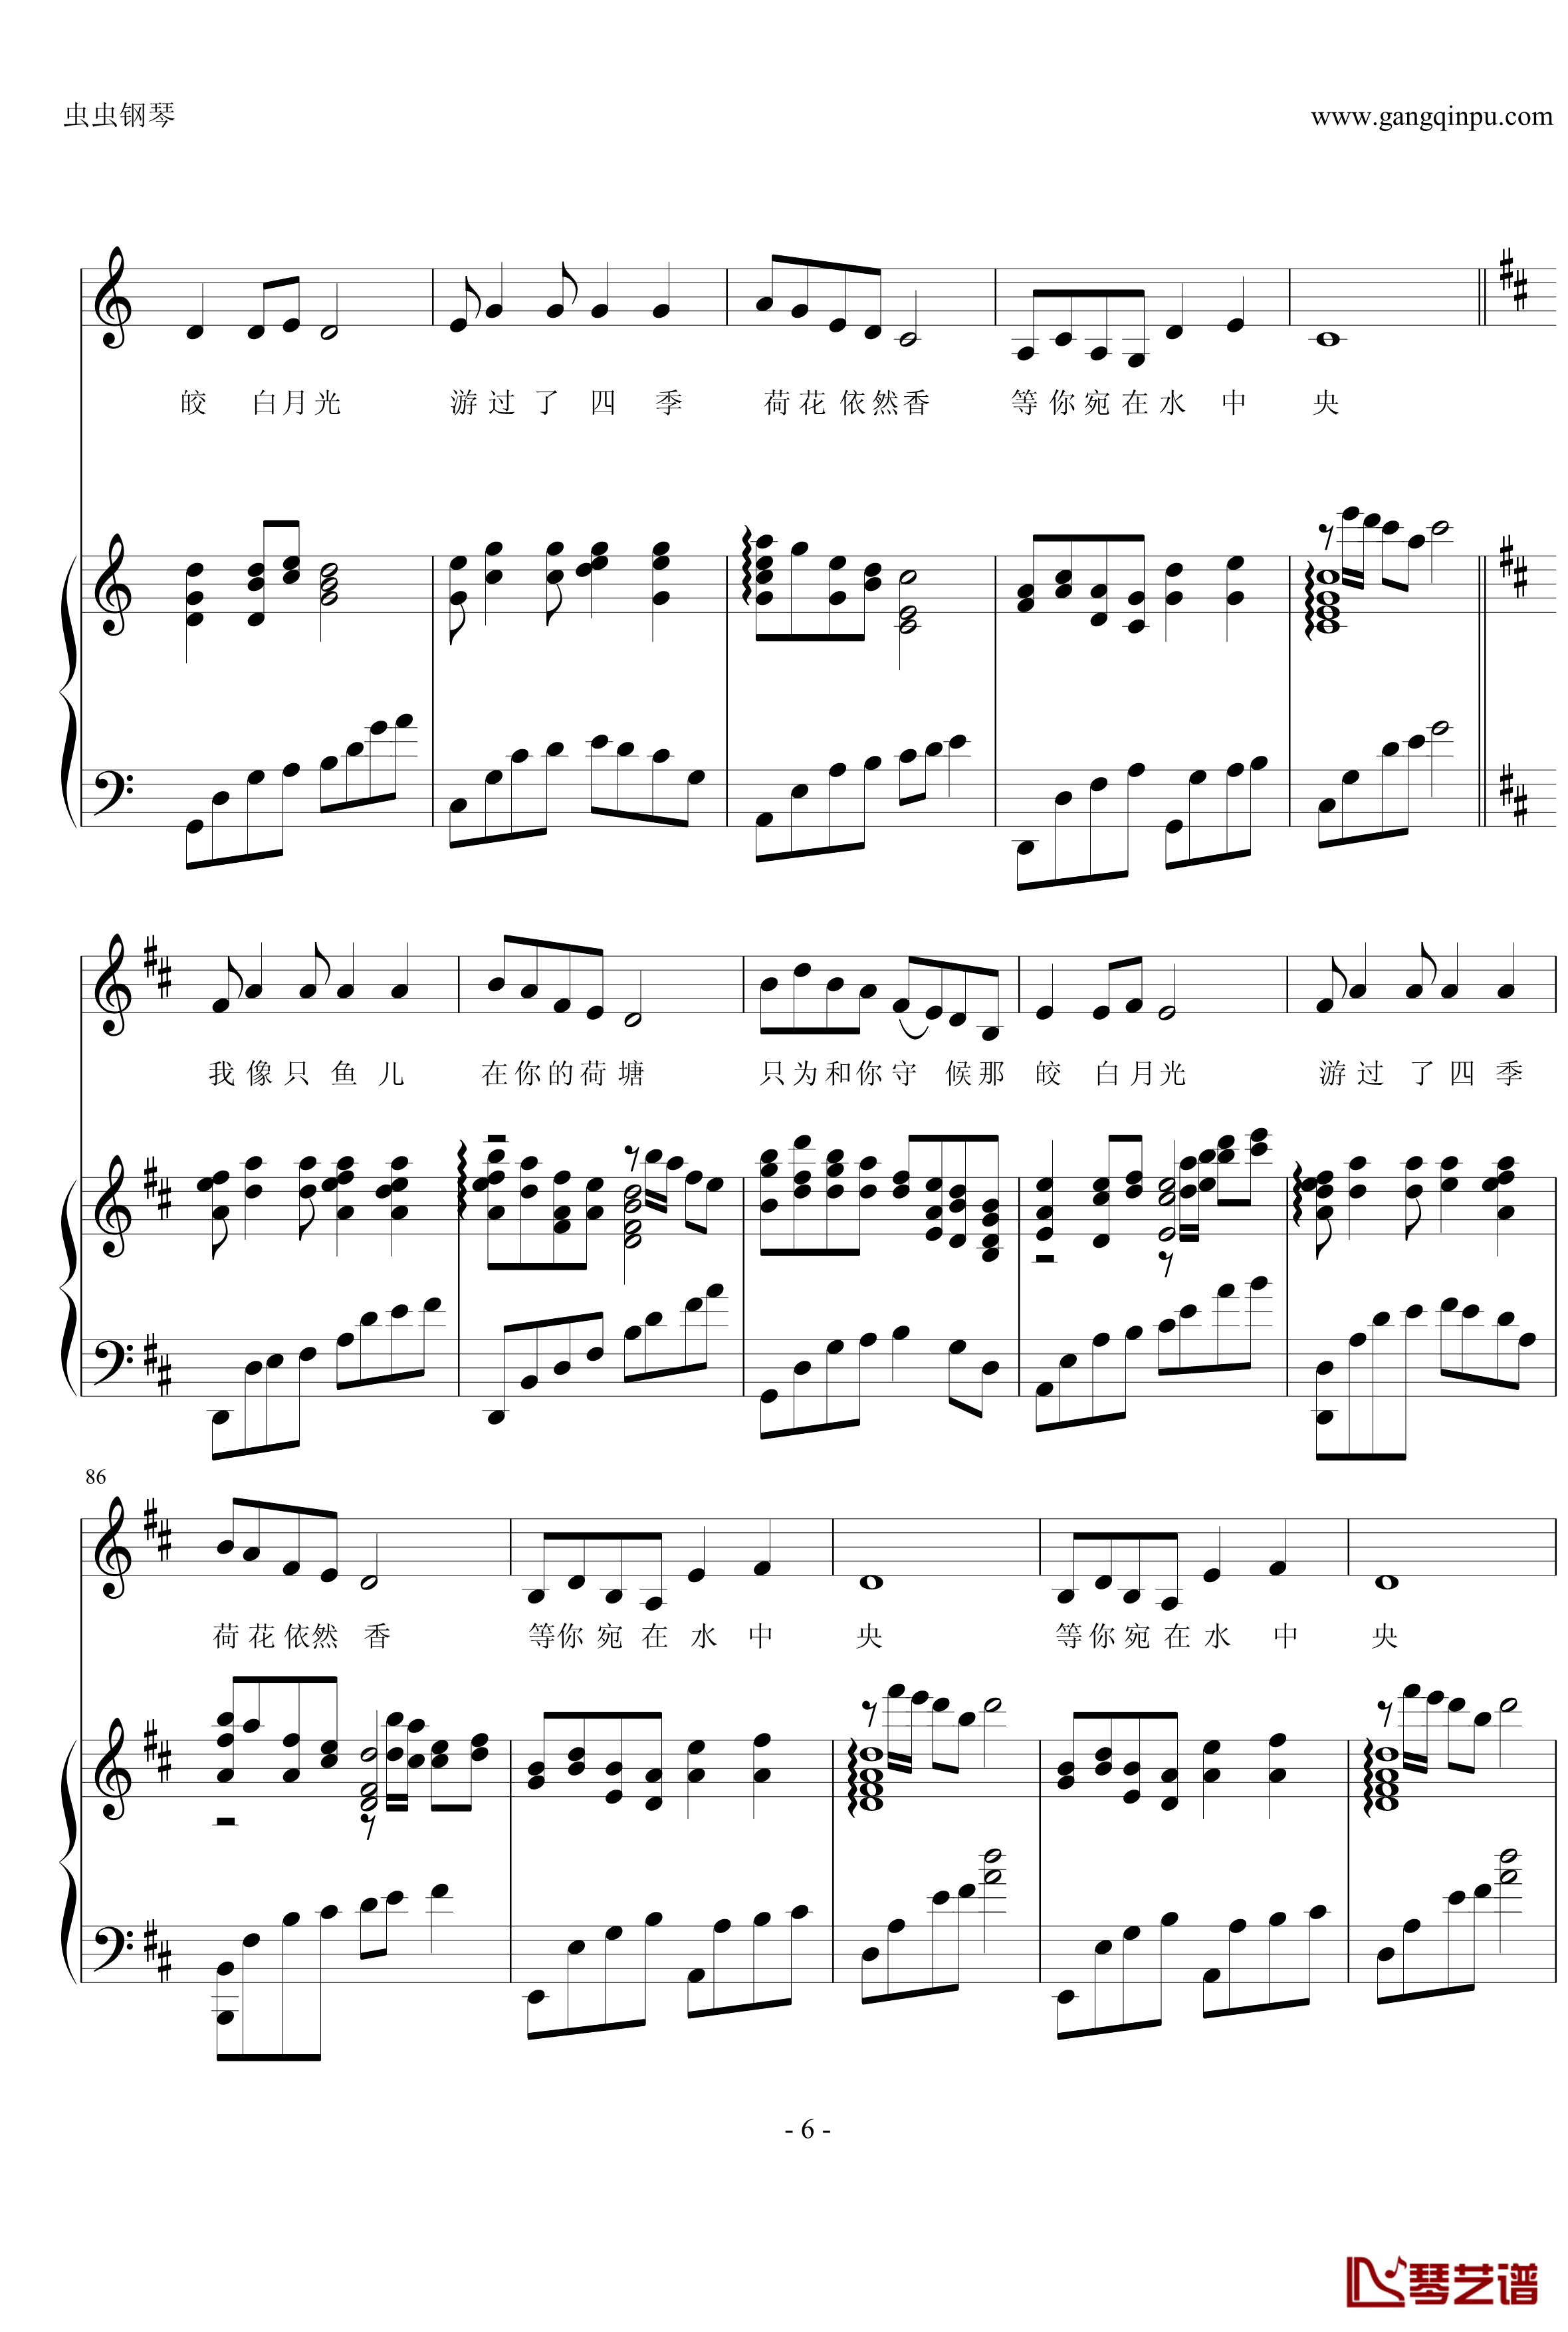 荷塘月色钢琴谱-钢伴弹唱-带歌词-凤凰传奇6